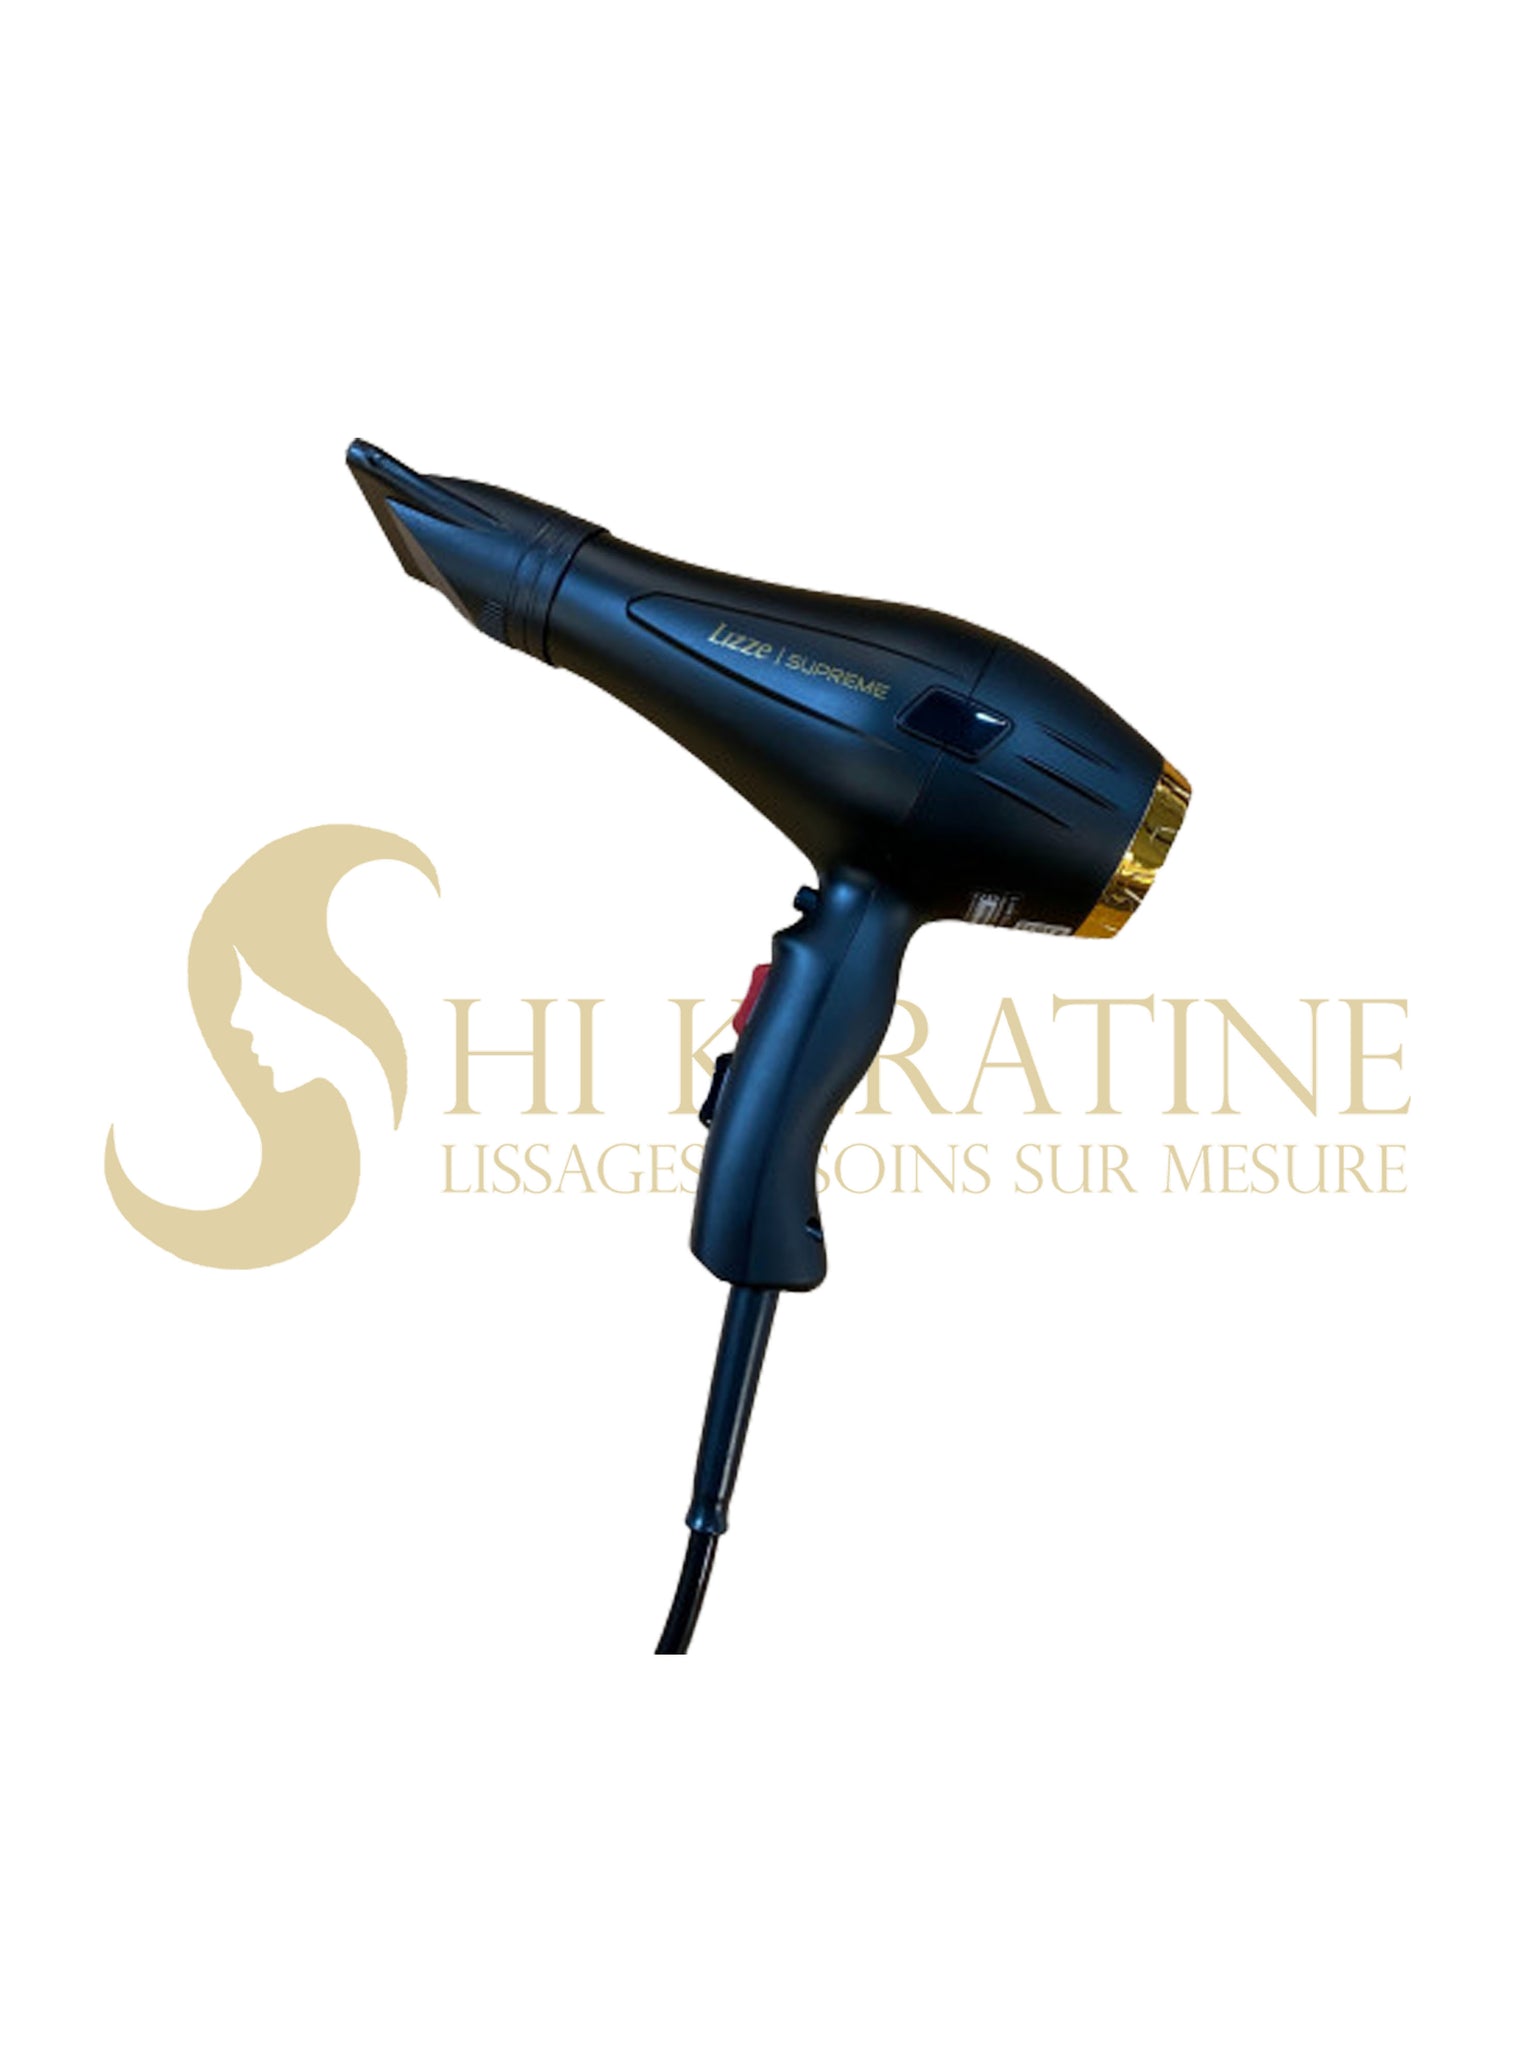 Sèche-cheveux LIZZE SUPREME 2600Watts - Shi Keratine